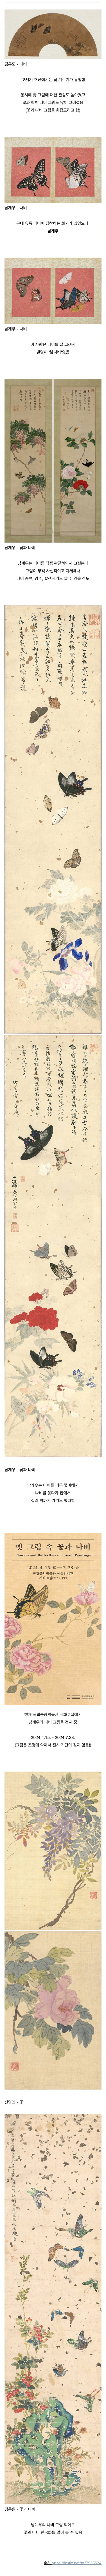 나비를 정말 잘 그렸던 조선시대의 화가.jpg